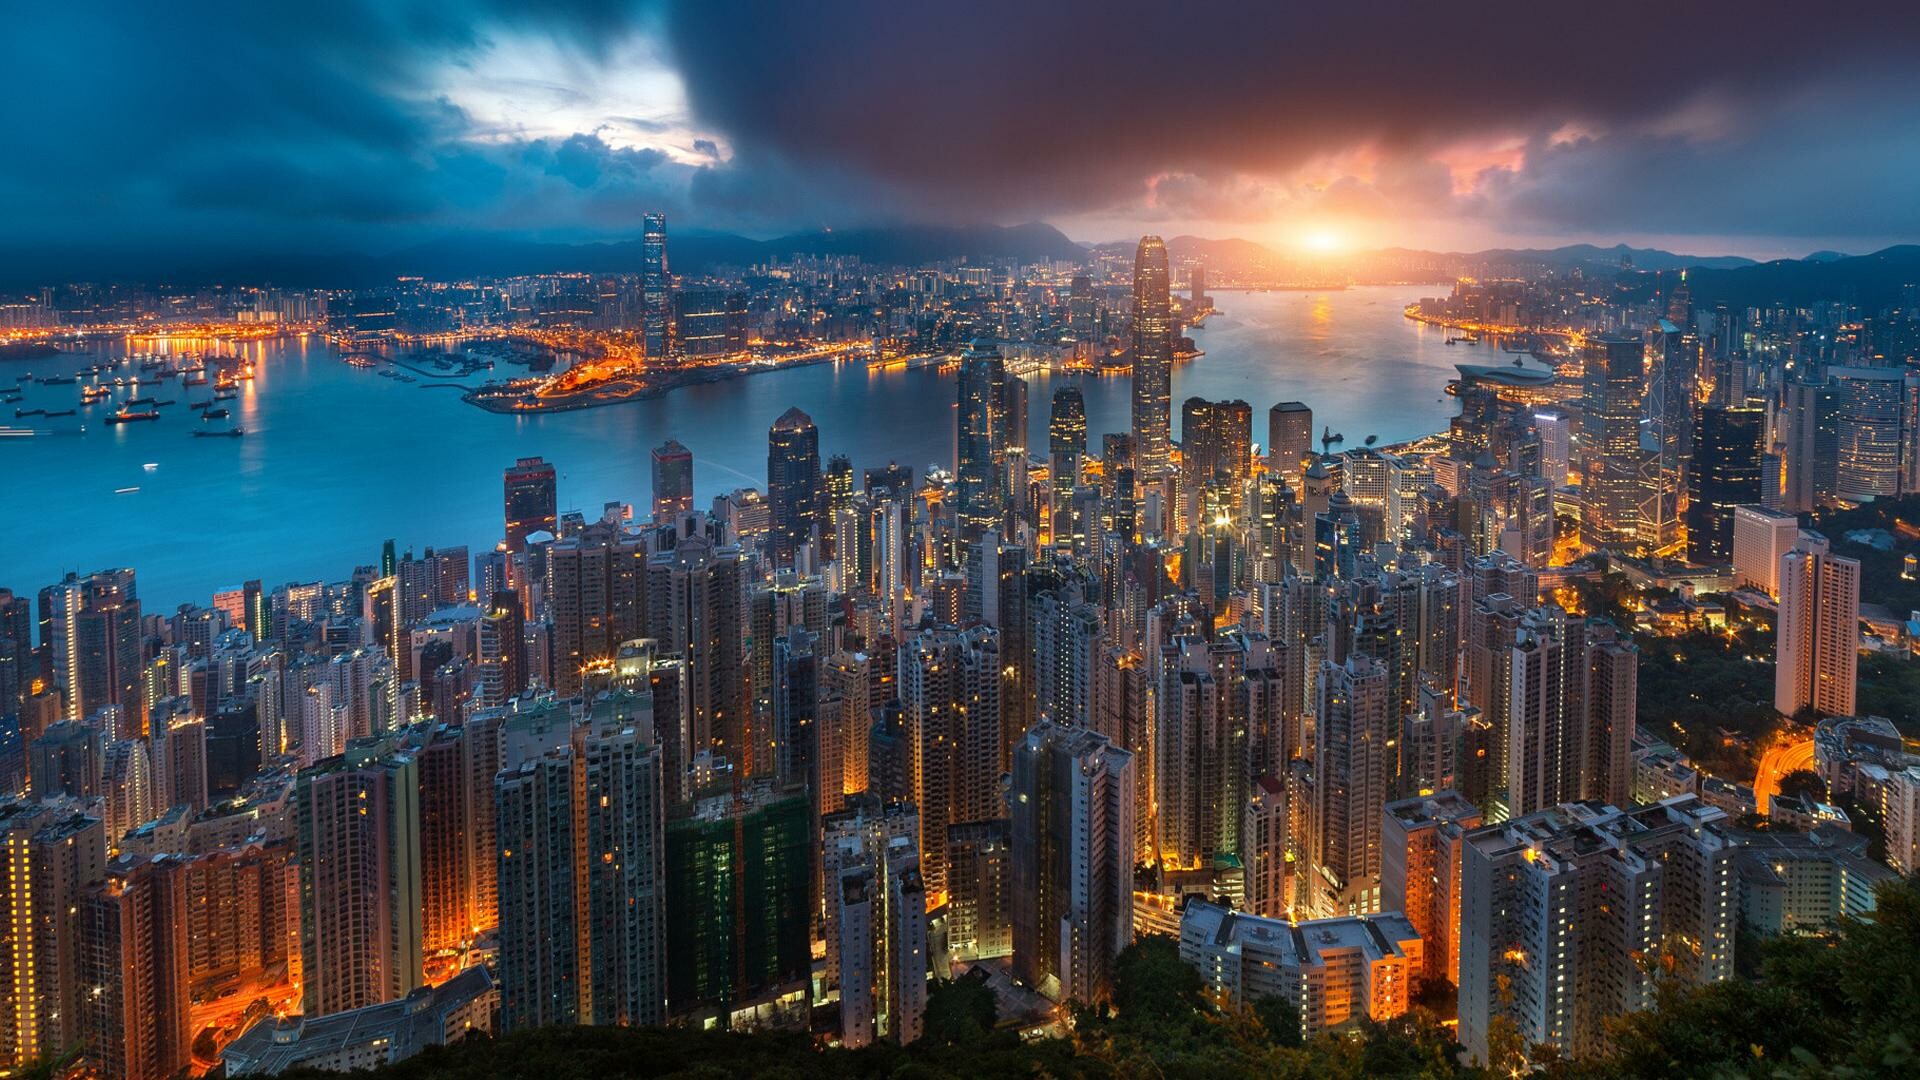 Hong Kong: Skyline, HKSAR, Buildings, Sunset. 1920x1080 Full HD Background.